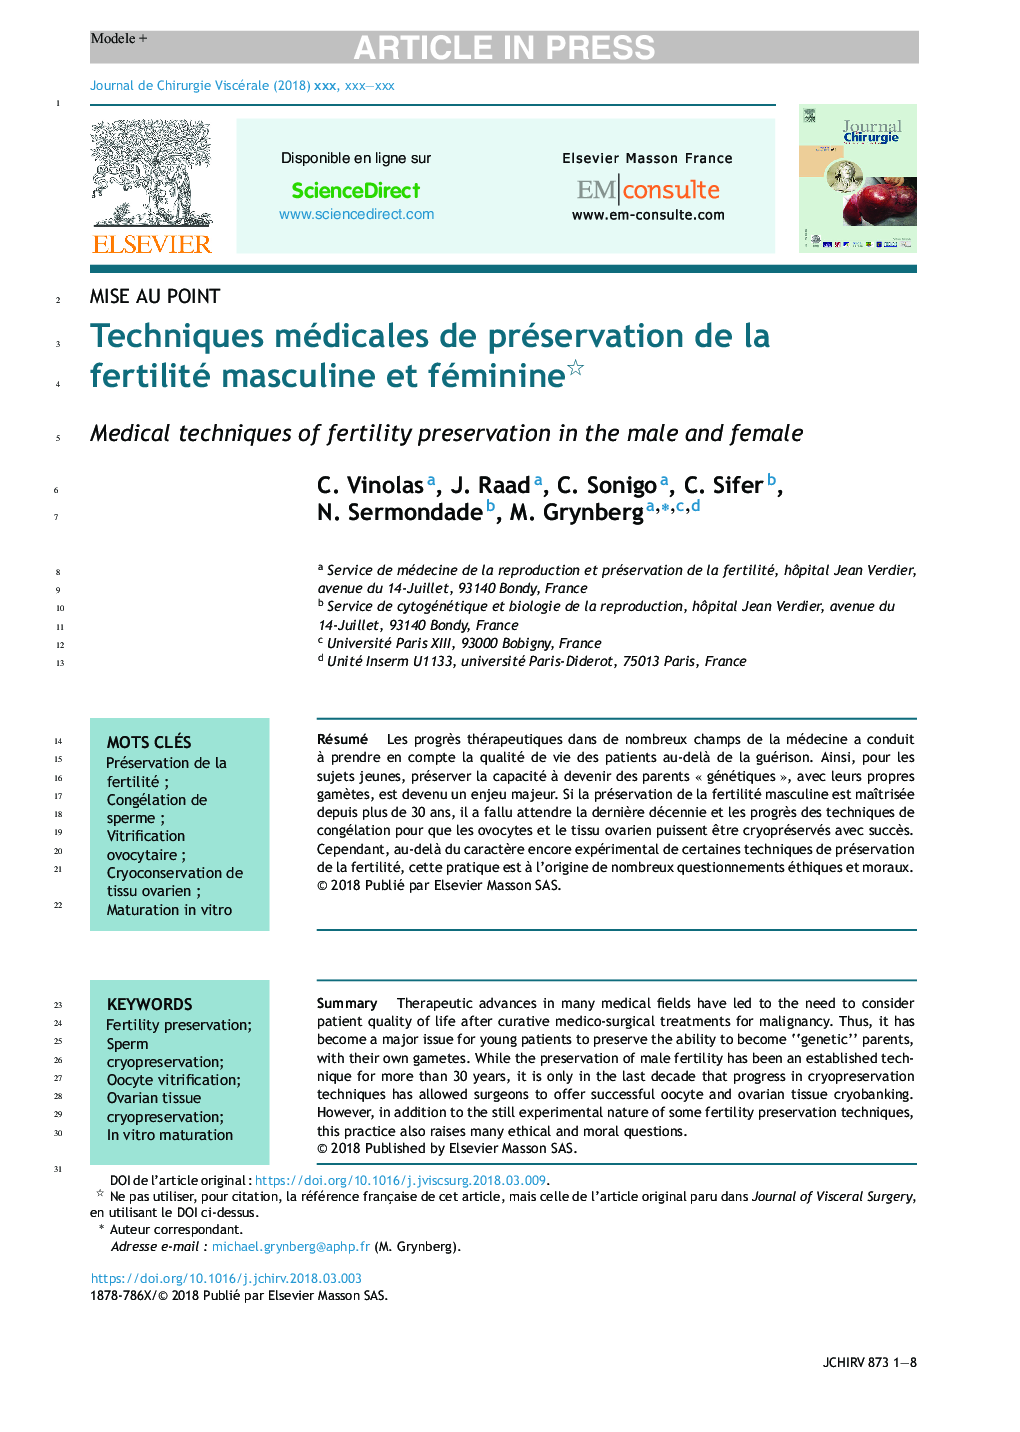 Techniques médicales de préservation de la fertilité masculine et féminine